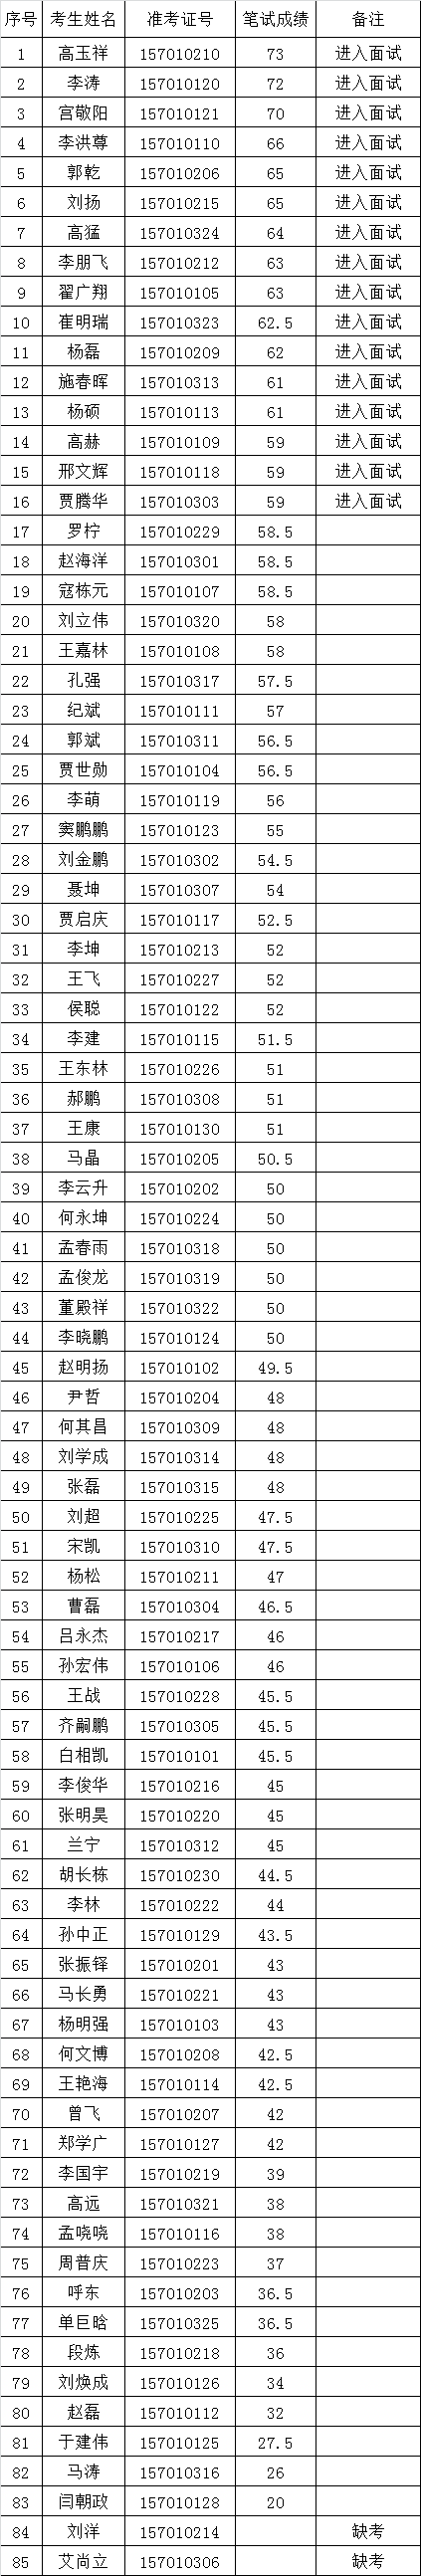 沧州市人民政府办公室2015年度公开选调人员笔试成绩.png